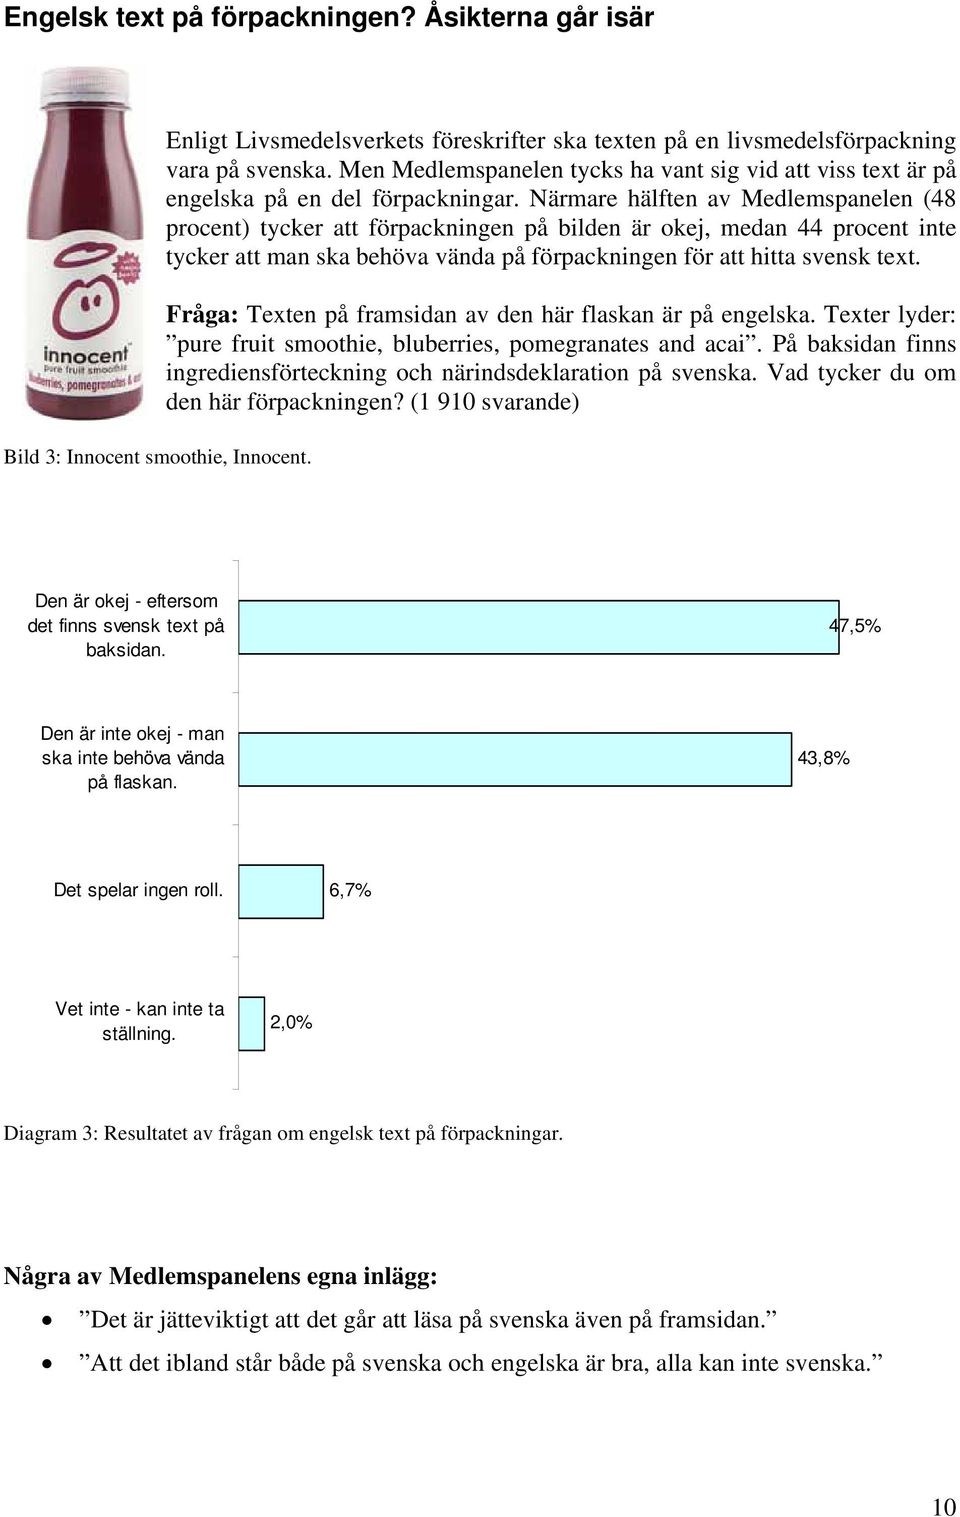 Närmare hälften av Medlemspanelen (48 procent) tycker att förpackningen på bilden är okej, medan 44 procent inte tycker att man ska behöva vända på förpackningen för att hitta svensk text.